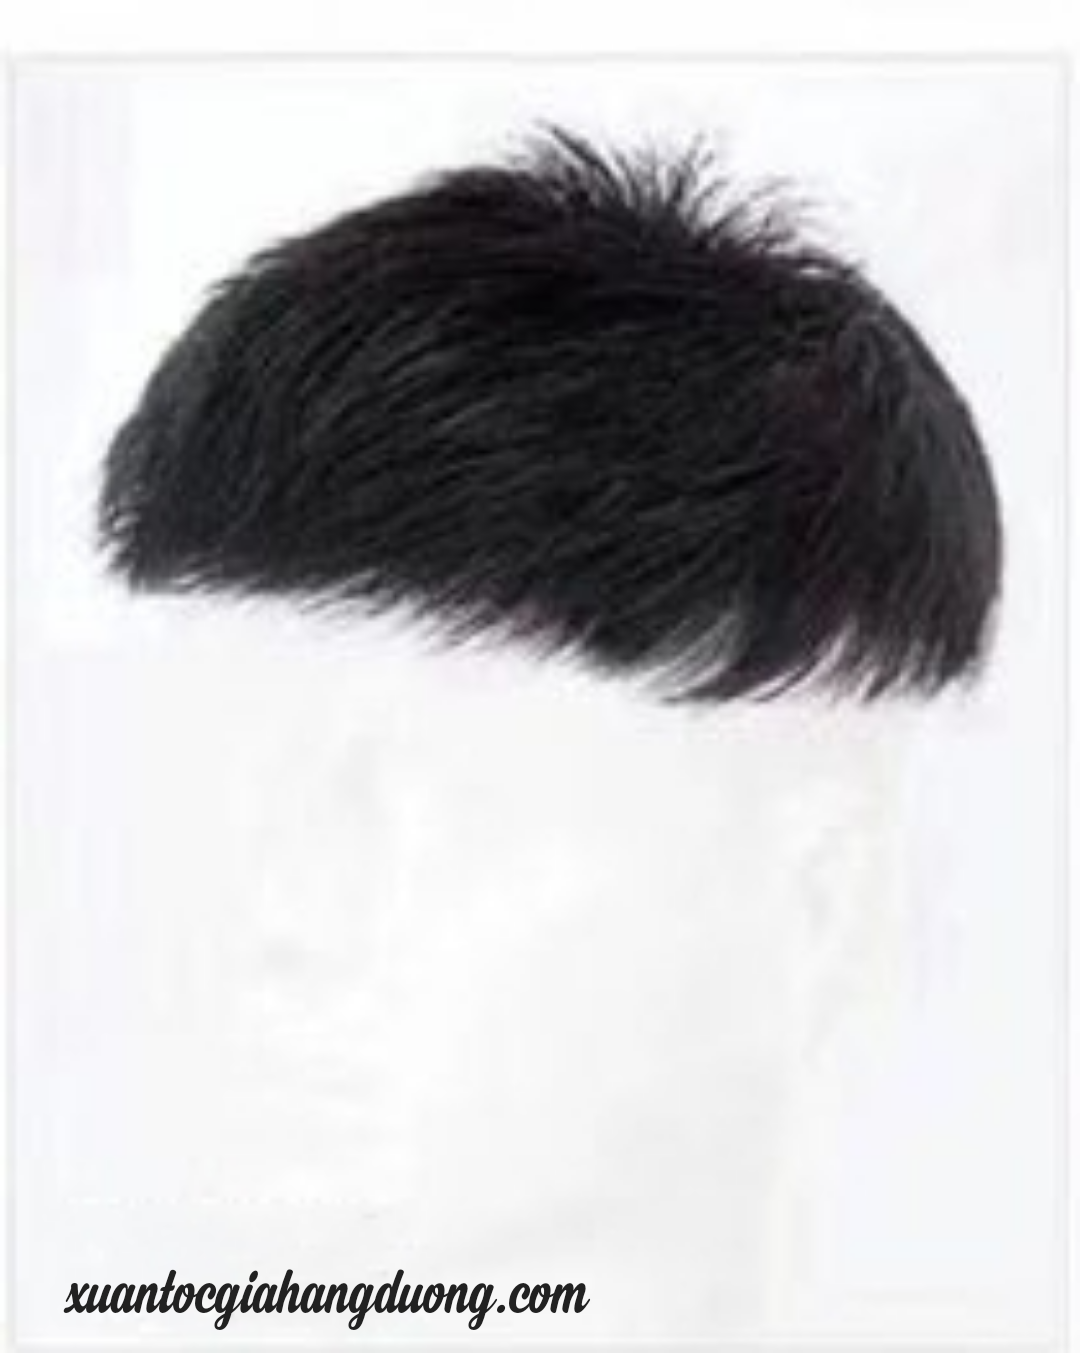 Shop tóc giả nam nữ nguyên đầu có da đầu tóc mái hói TPHCM  Hagona   Tóc  giả mái hói nam Hagona  Tóc giả mái hói nam được sản